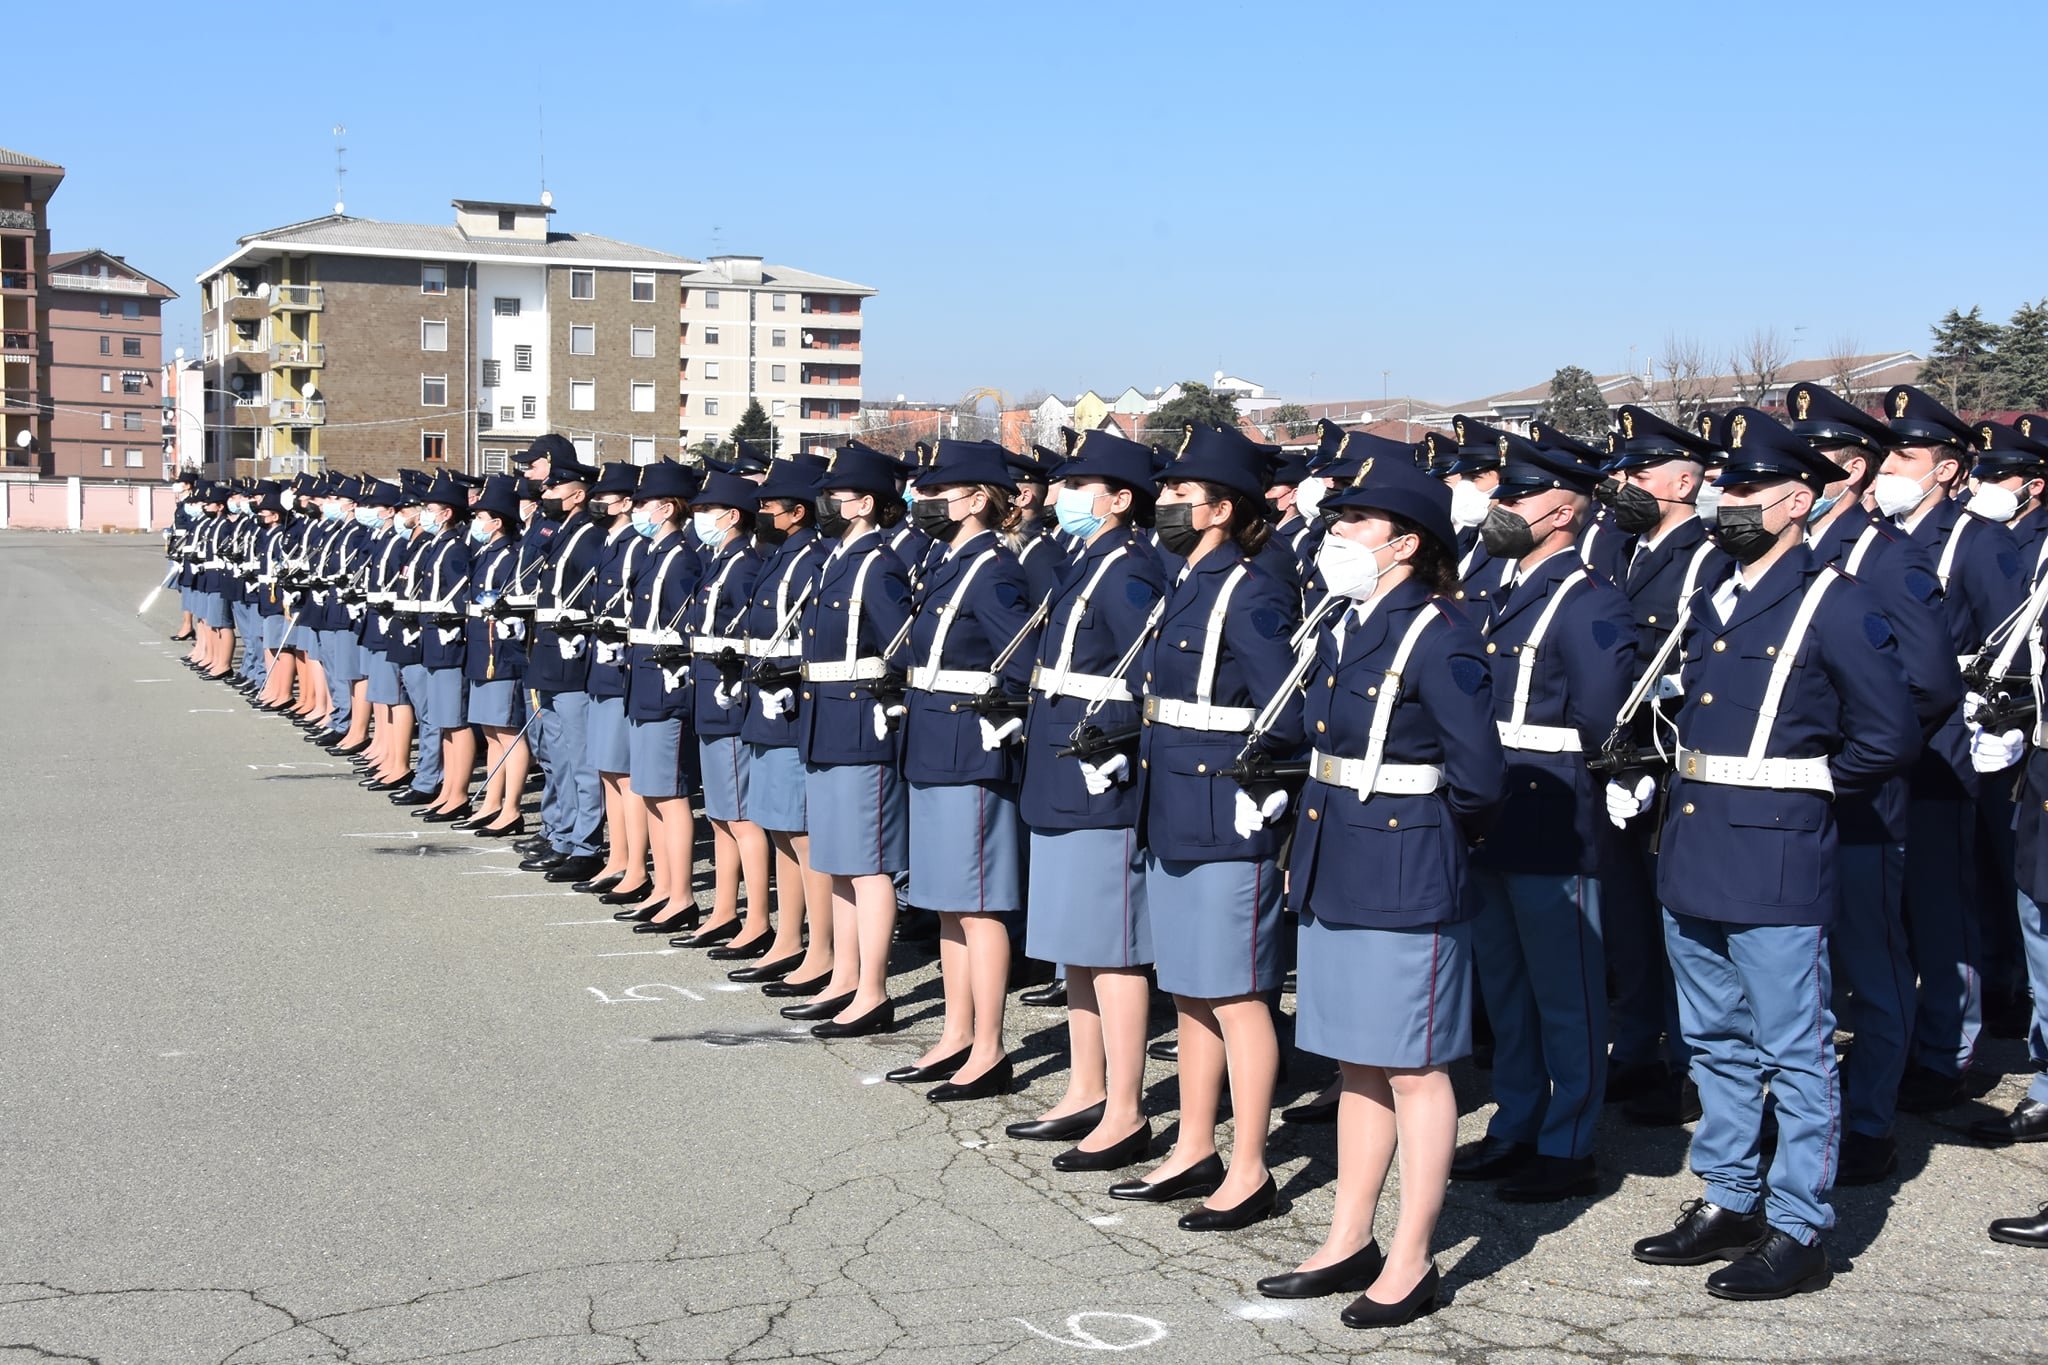 Giuramento solenne per gli Allievi Agenti del 215° corso della Scuola di Polizia di Alessandria